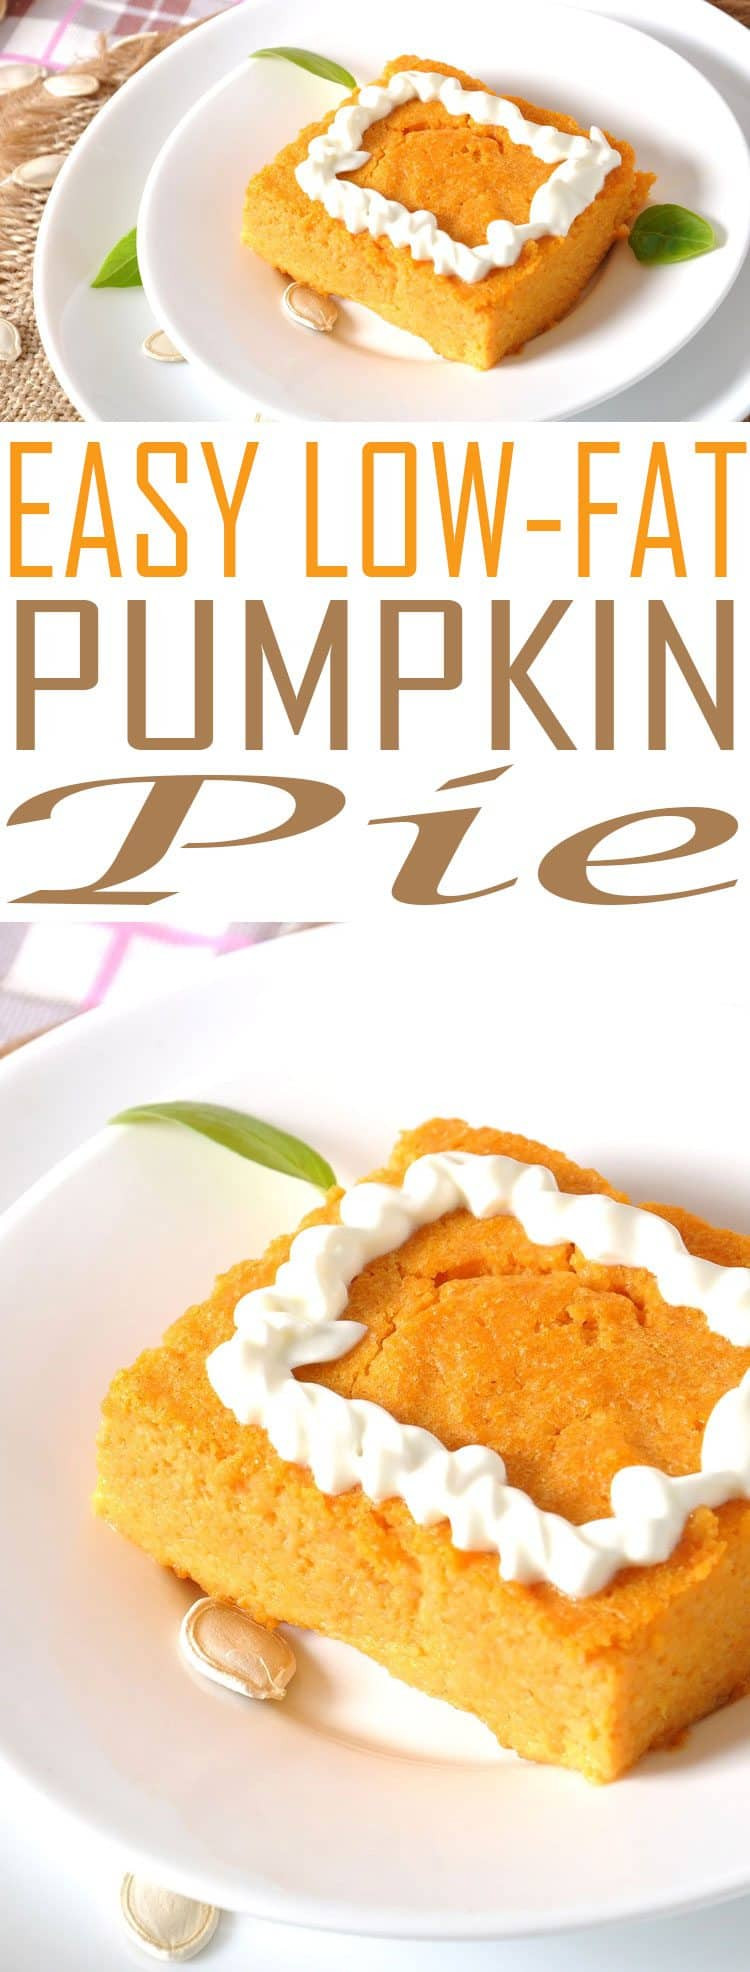 Low Calorie Pumpkin Recipes
 Weight Watchers Pumpkin Pie Just 1 4 Smart Points Per